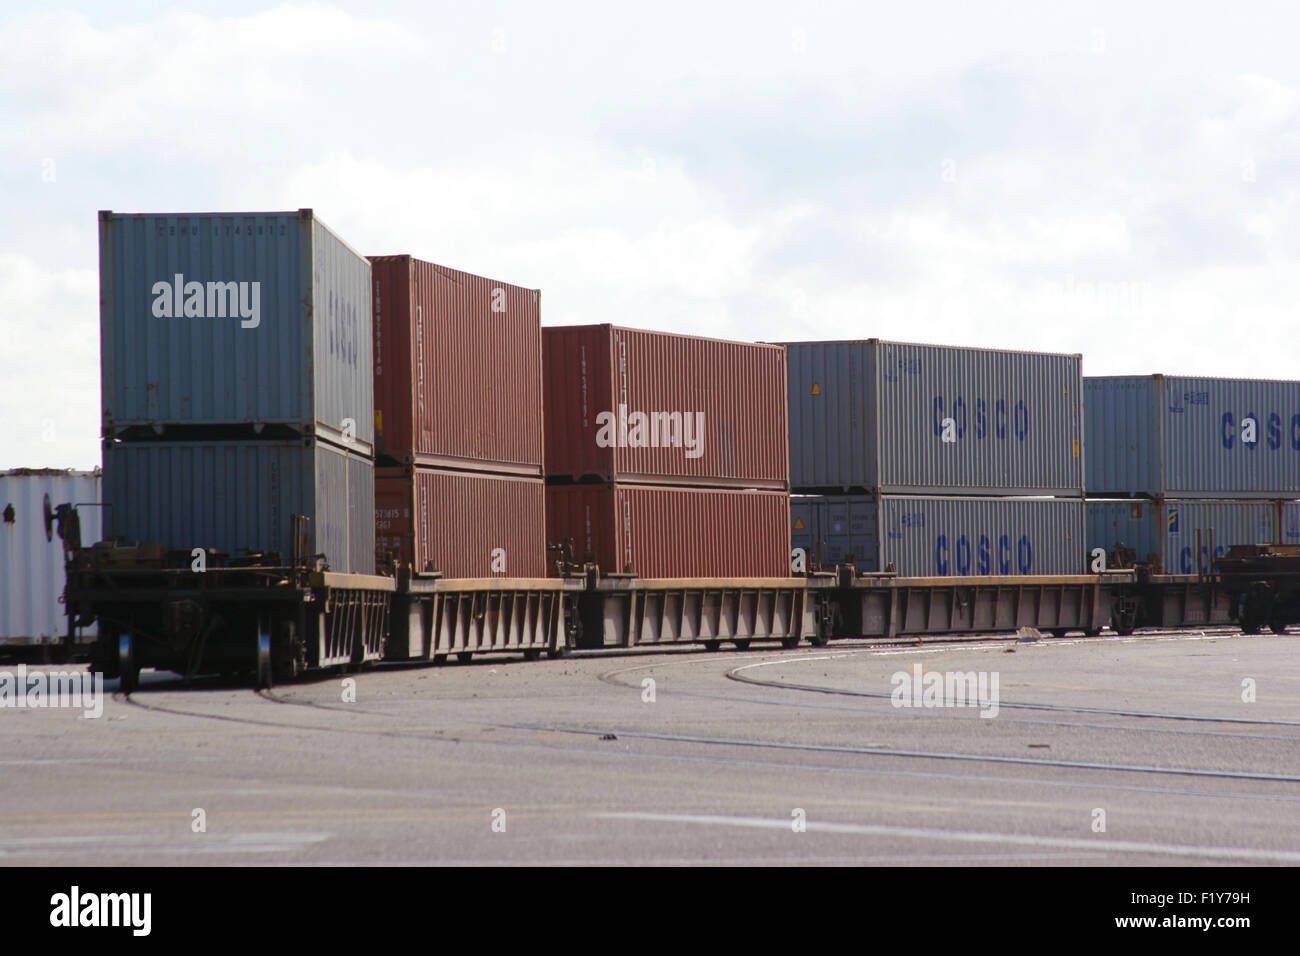 Sur les conteneurs sur wagons-dock à l'installation portuaire. Banque D'Images